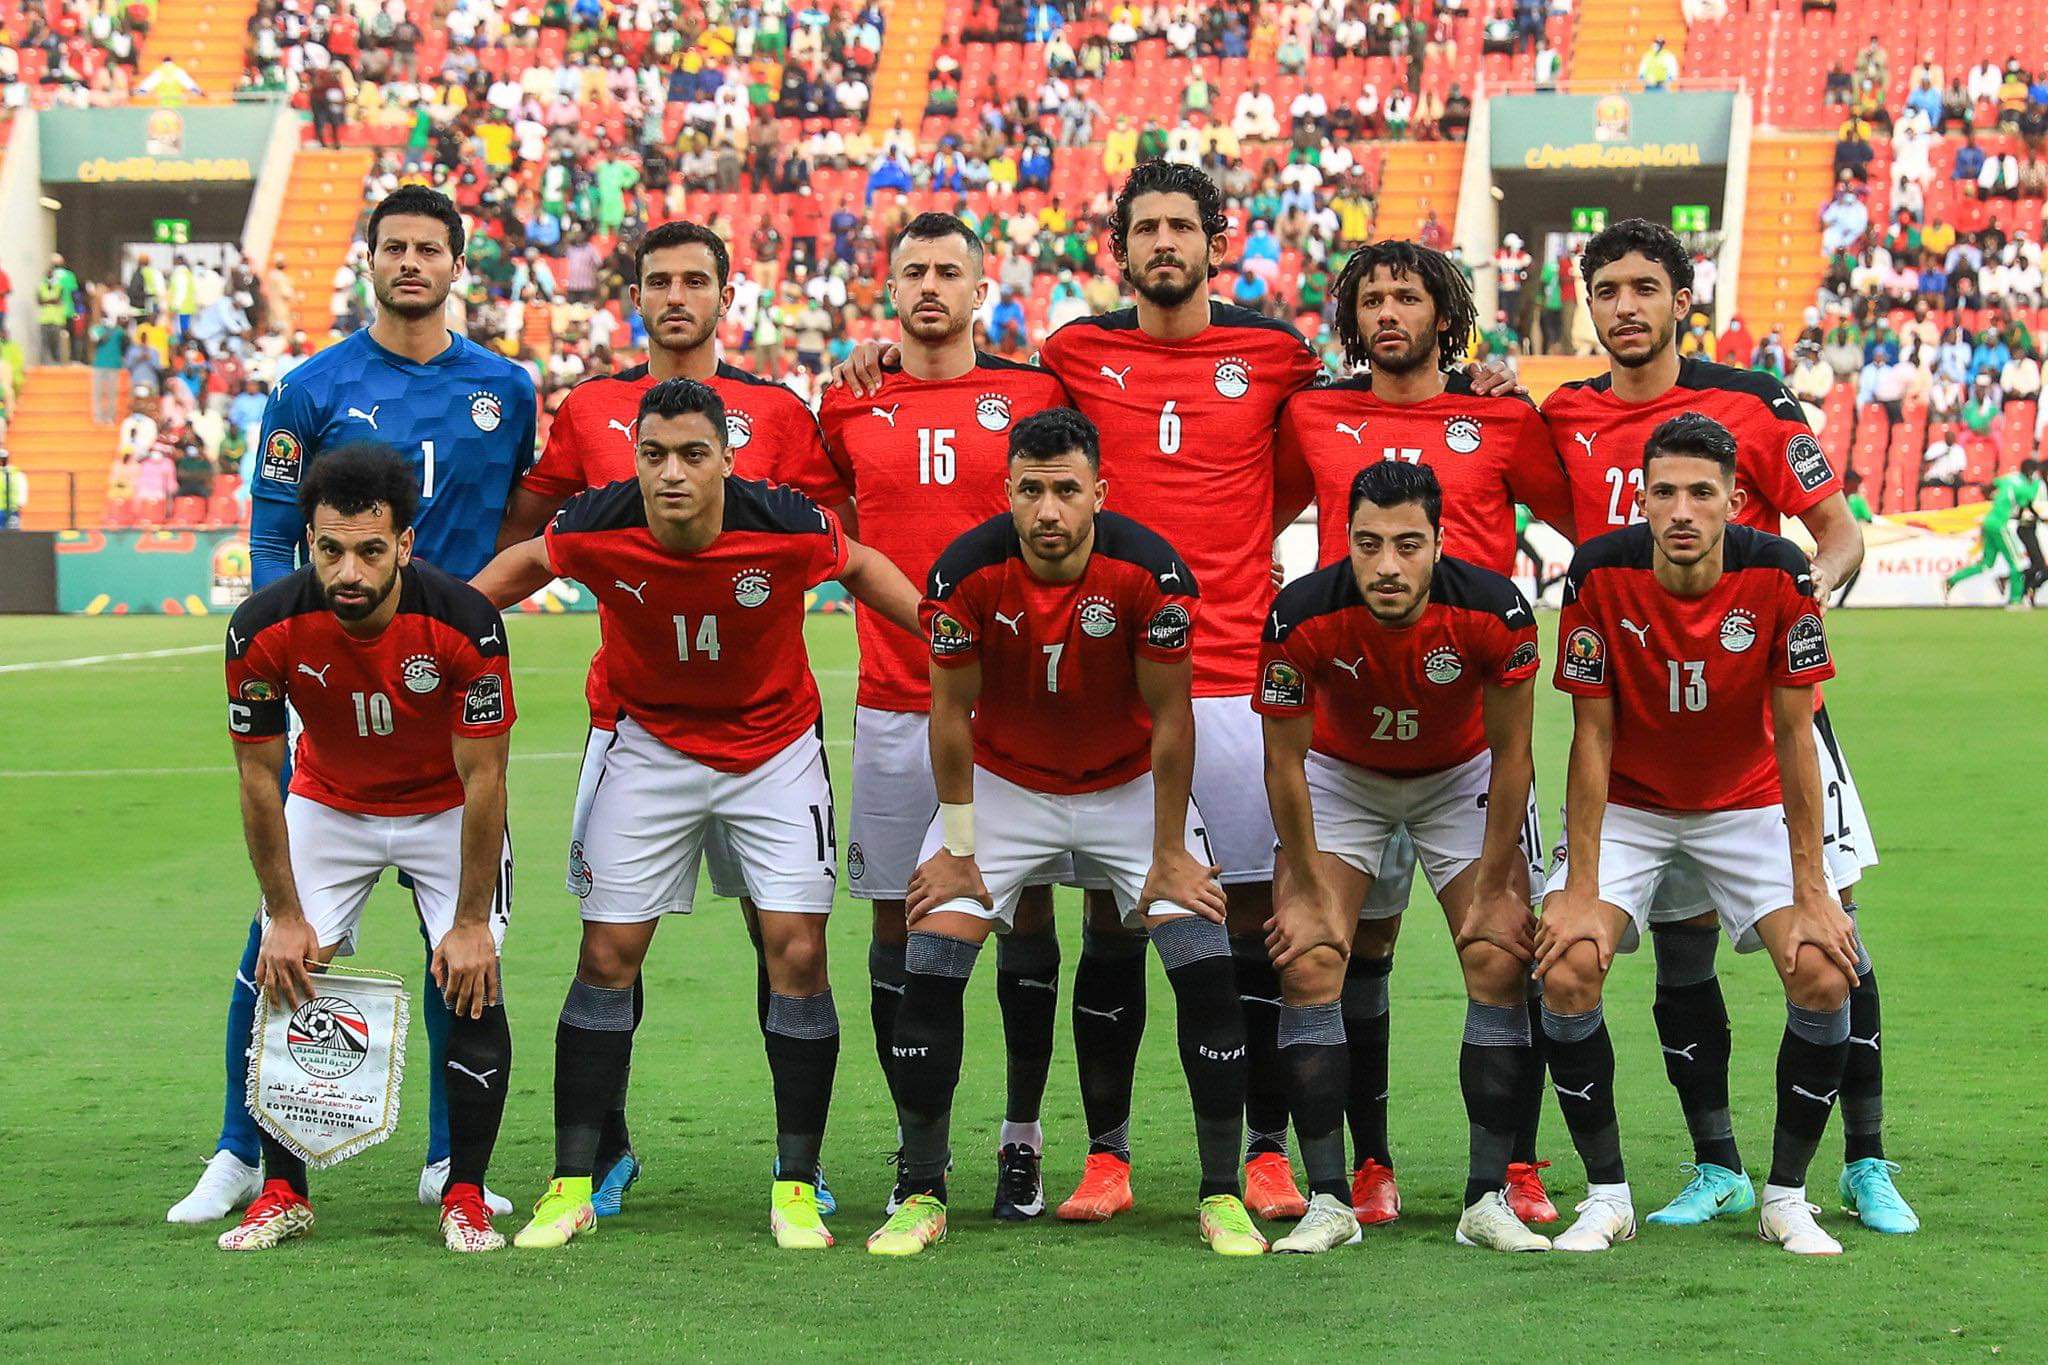 ملخص نتيجة مباراة مصر والسودان الان ومصر تنتظر ترتيب مجموعة الجزائر النهائي